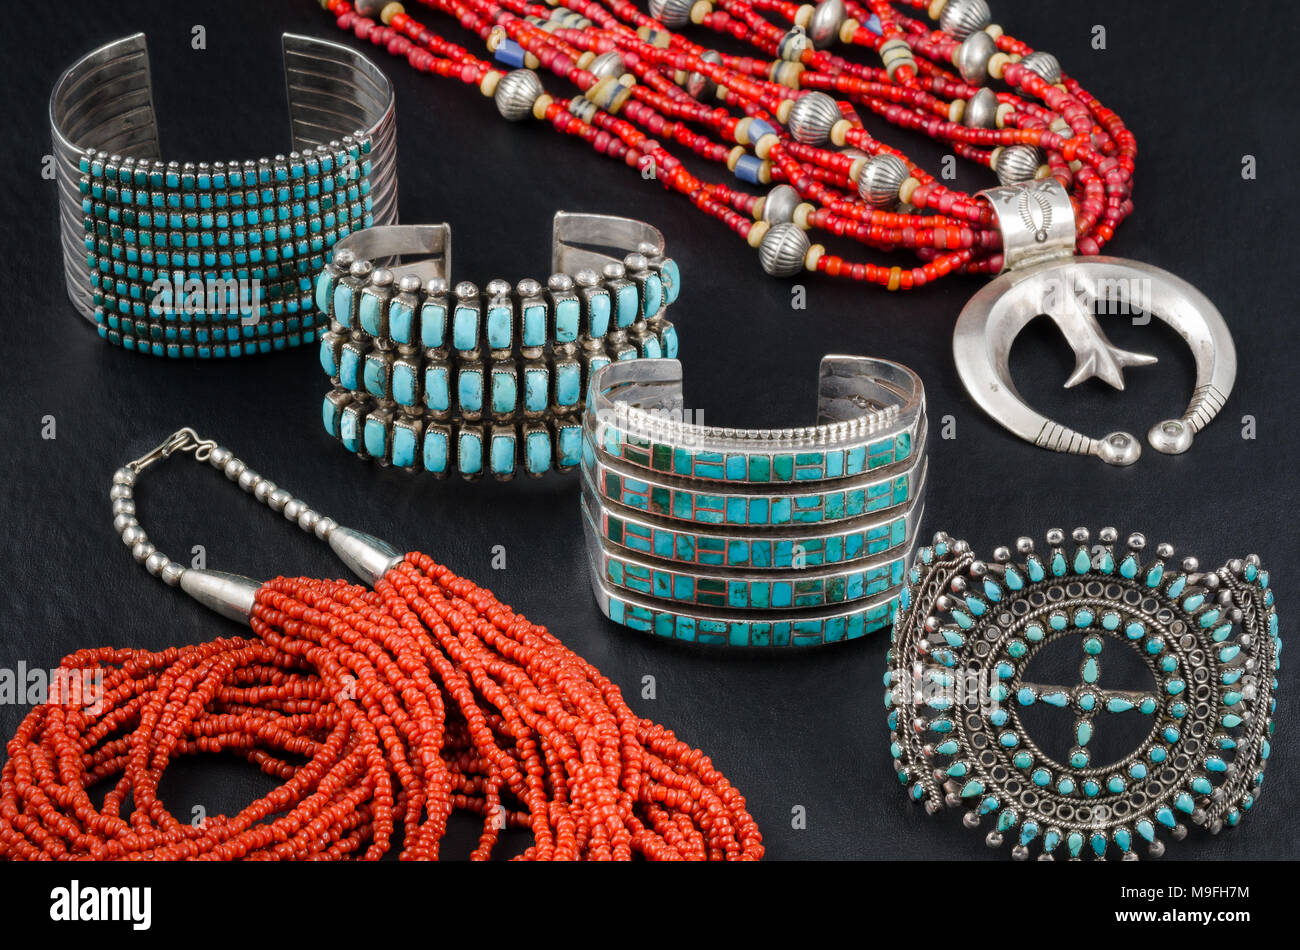 Sammlung von Native American, Türkis, Koralle und Silber Perlen Schmuck.  Manschette Armbänder und Perlenketten Stockfotografie - Alamy